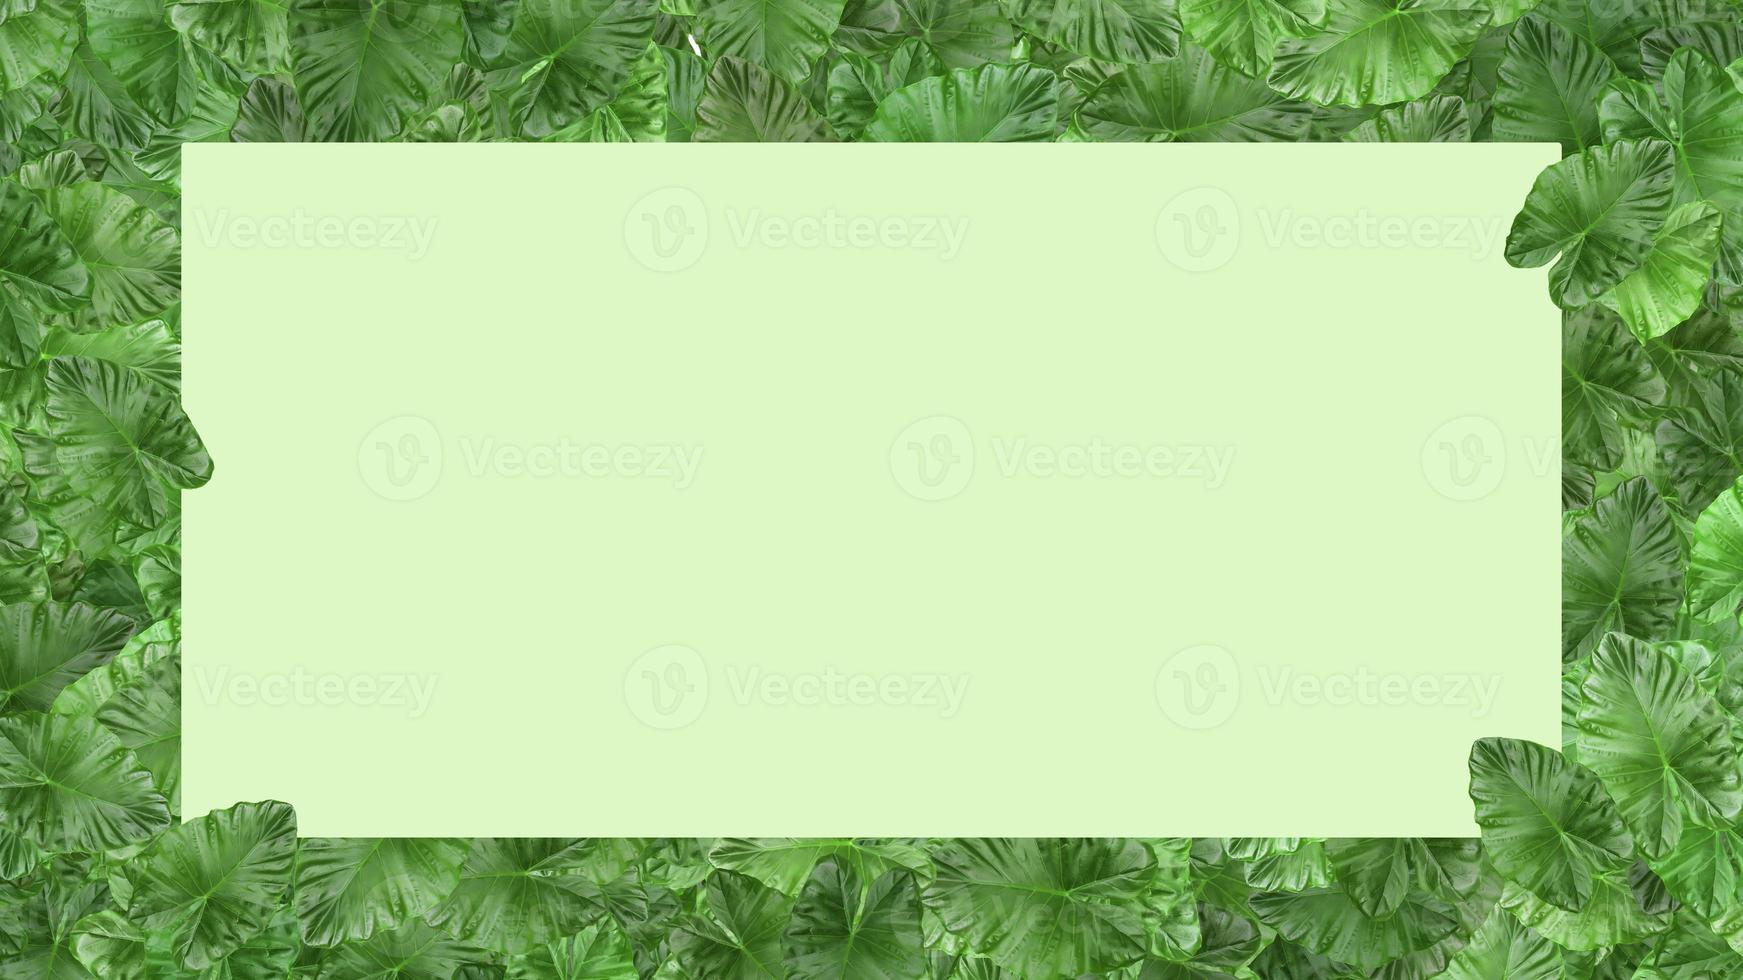 cadre de feuille verte isolé sur fond blanc avec un espace pour insérer du texte. photo